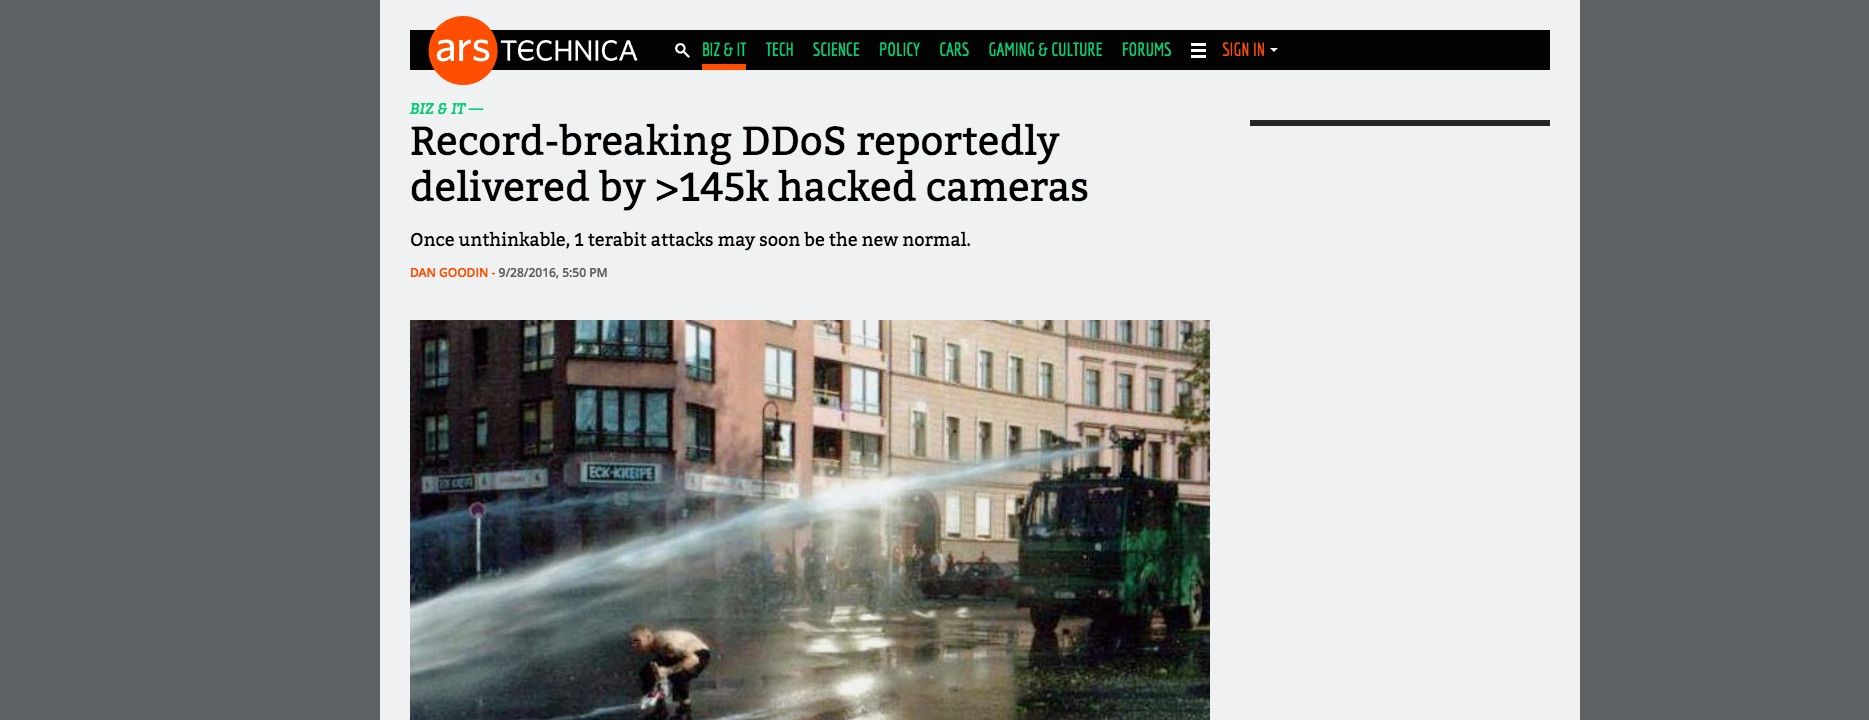 OVH DDOS attack